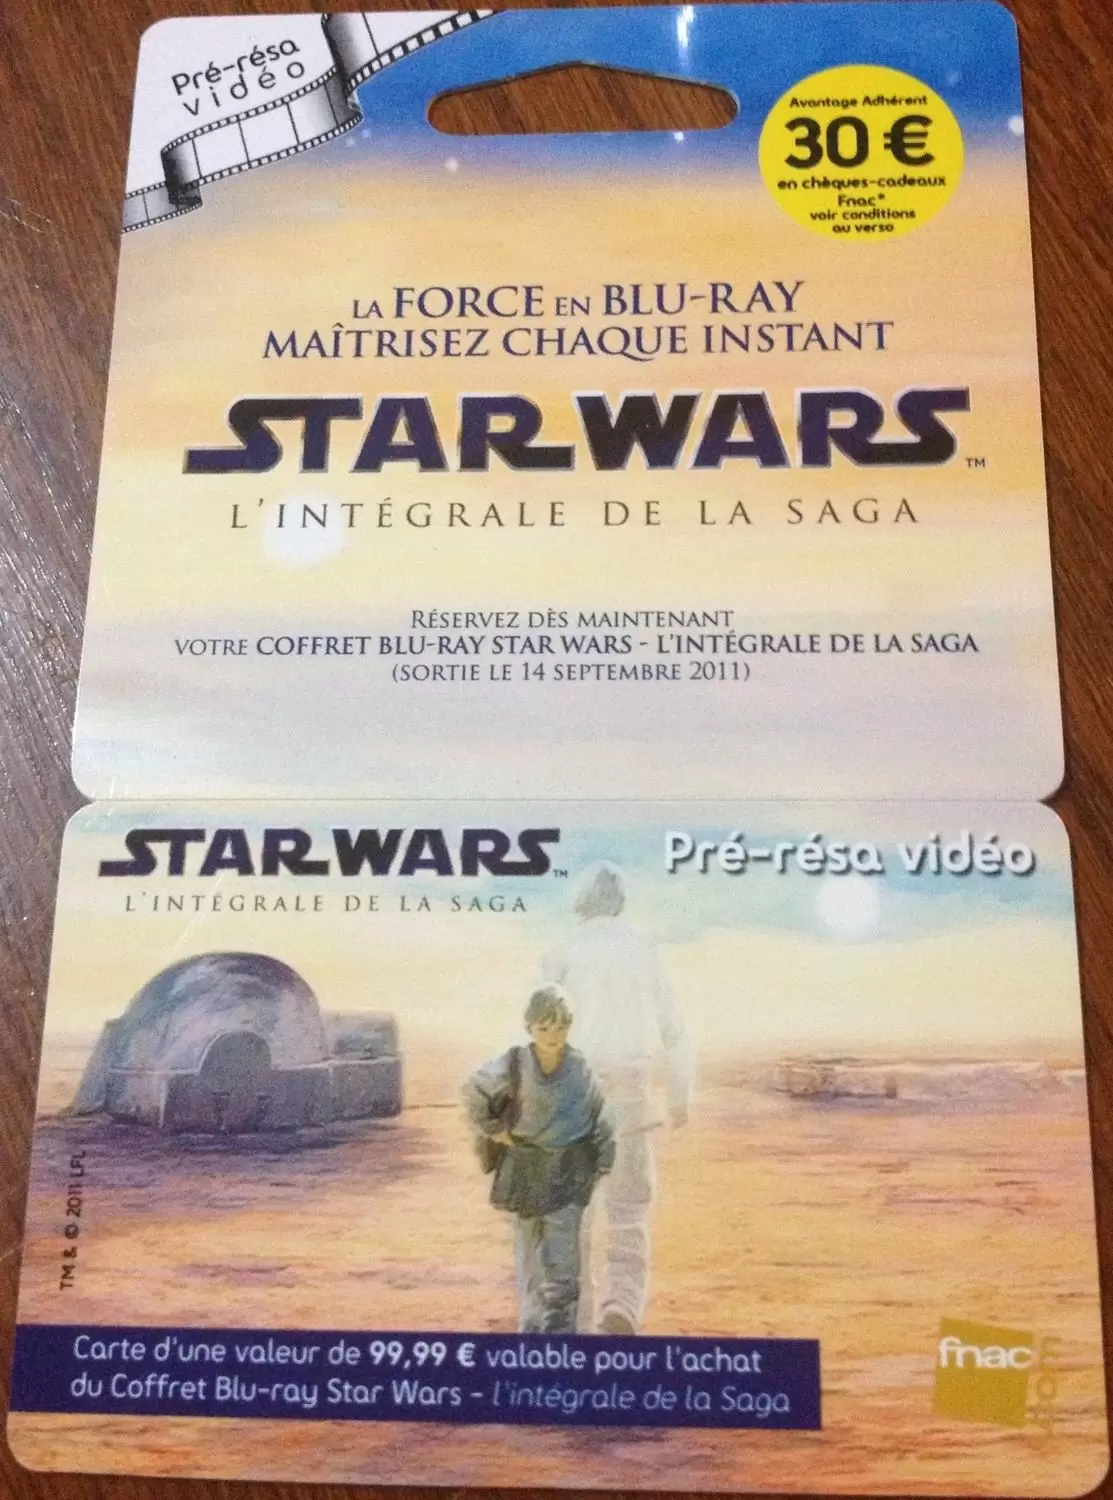 Cartes cadeau Fnac - Carte Fnac Star Wars Anakin Skywalker Pré-résa vidéo avec encart